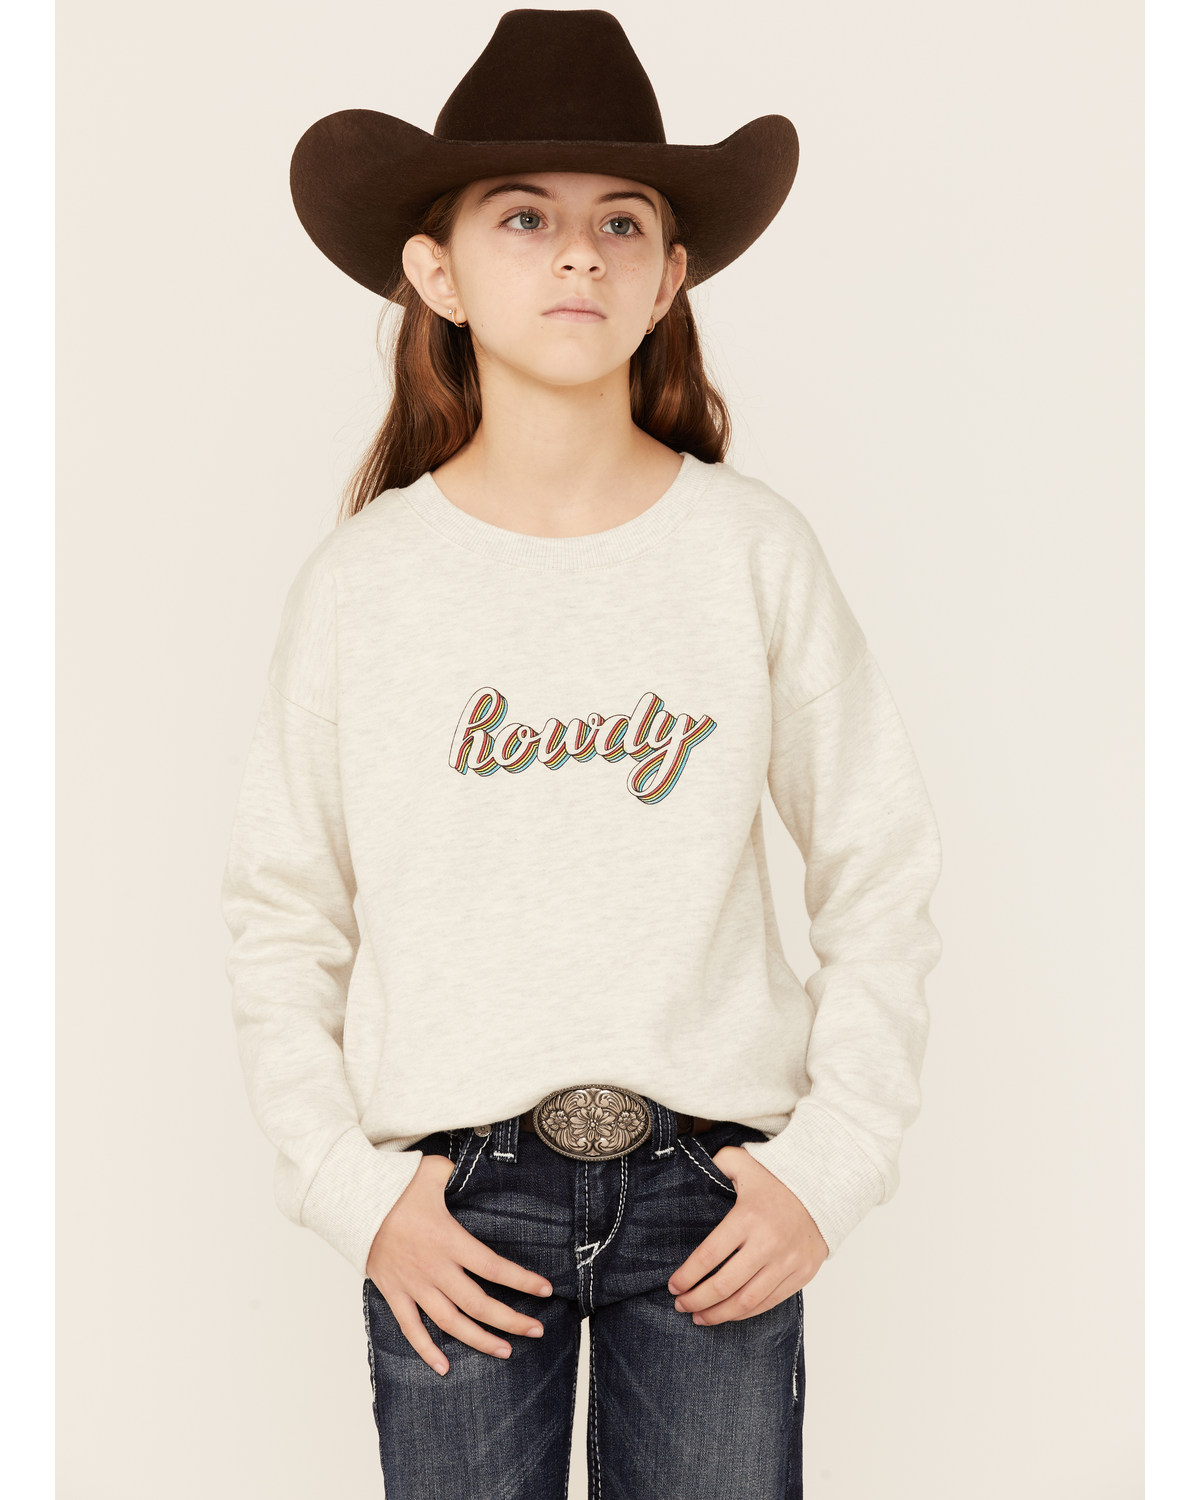 Roper Girls' Howdy Sweatshirt